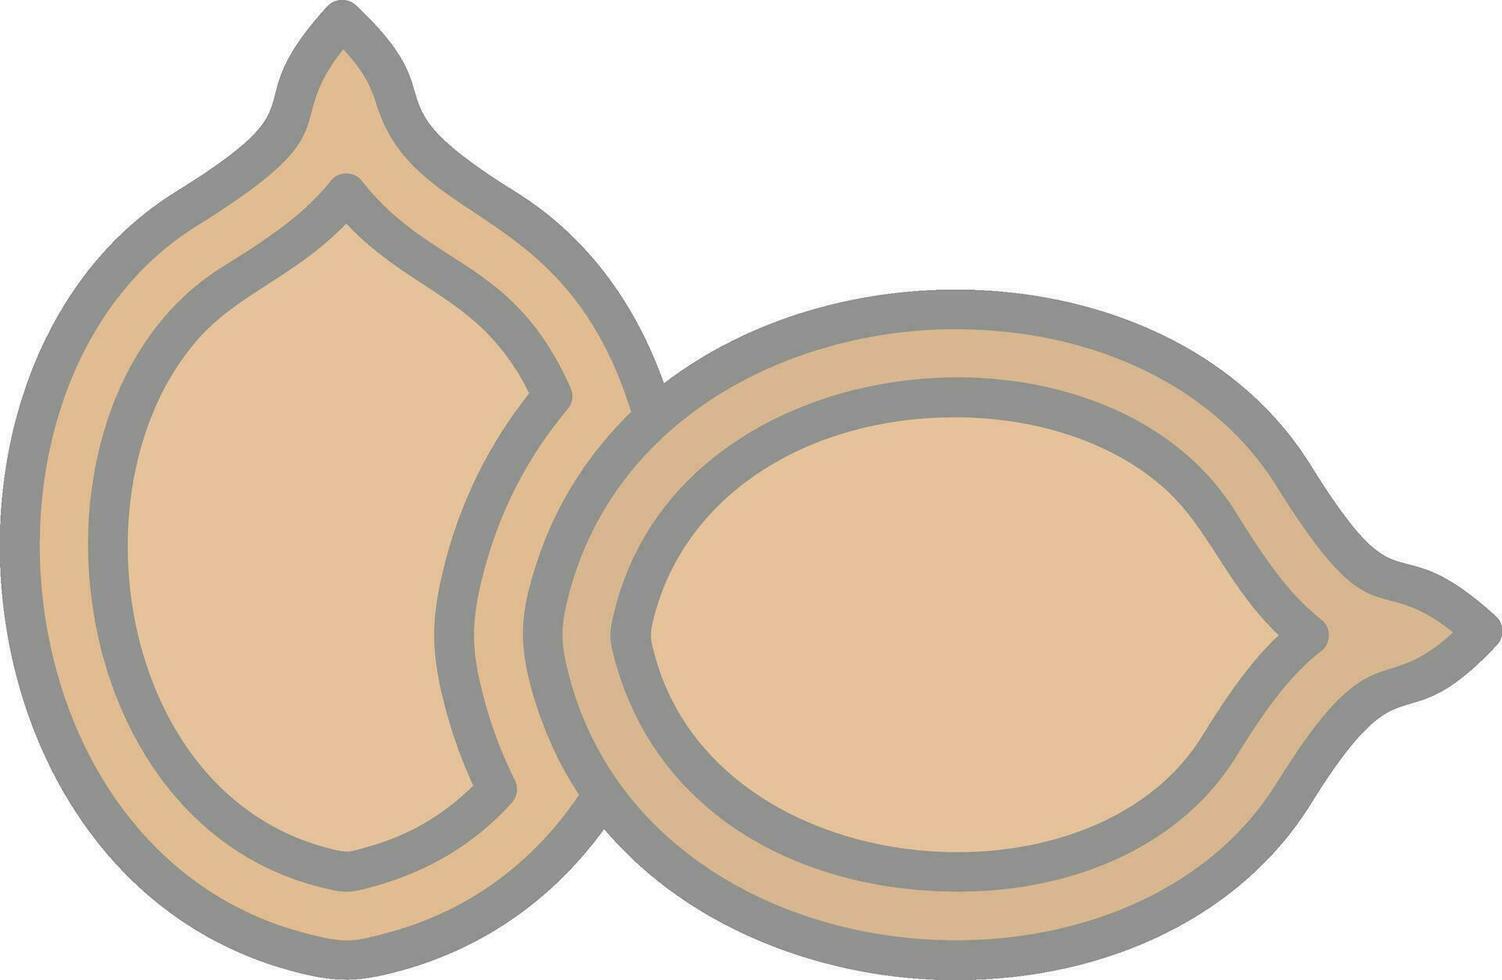 design de ícone de vetor de sementes